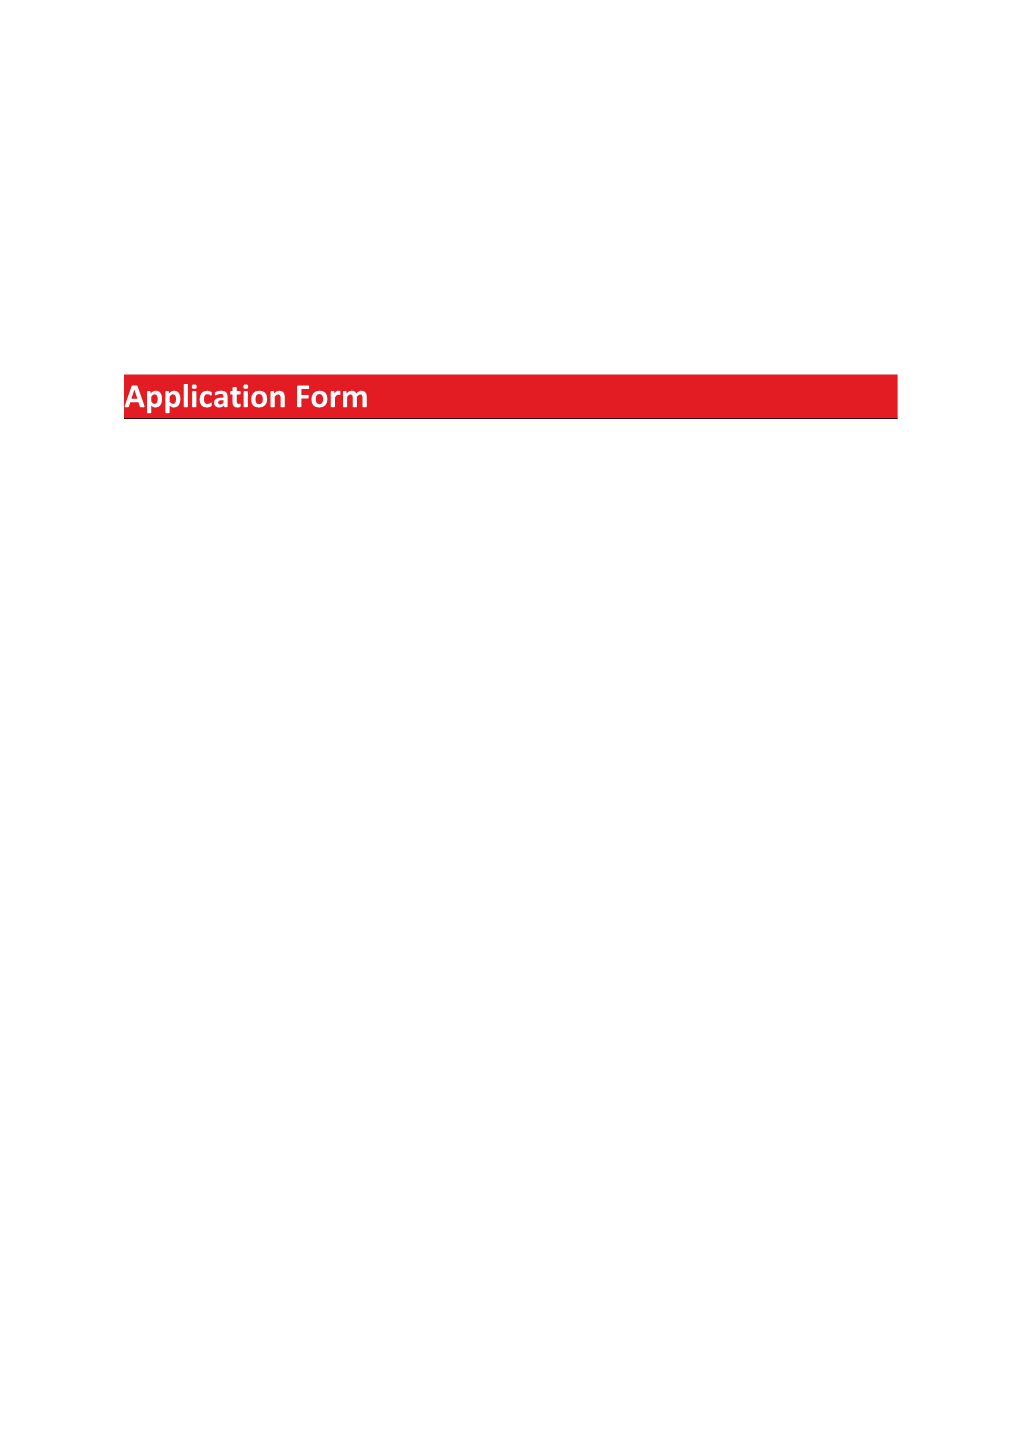 Emp: Safer Recruitment Pack: Application Form V3.8 25 Mar 15